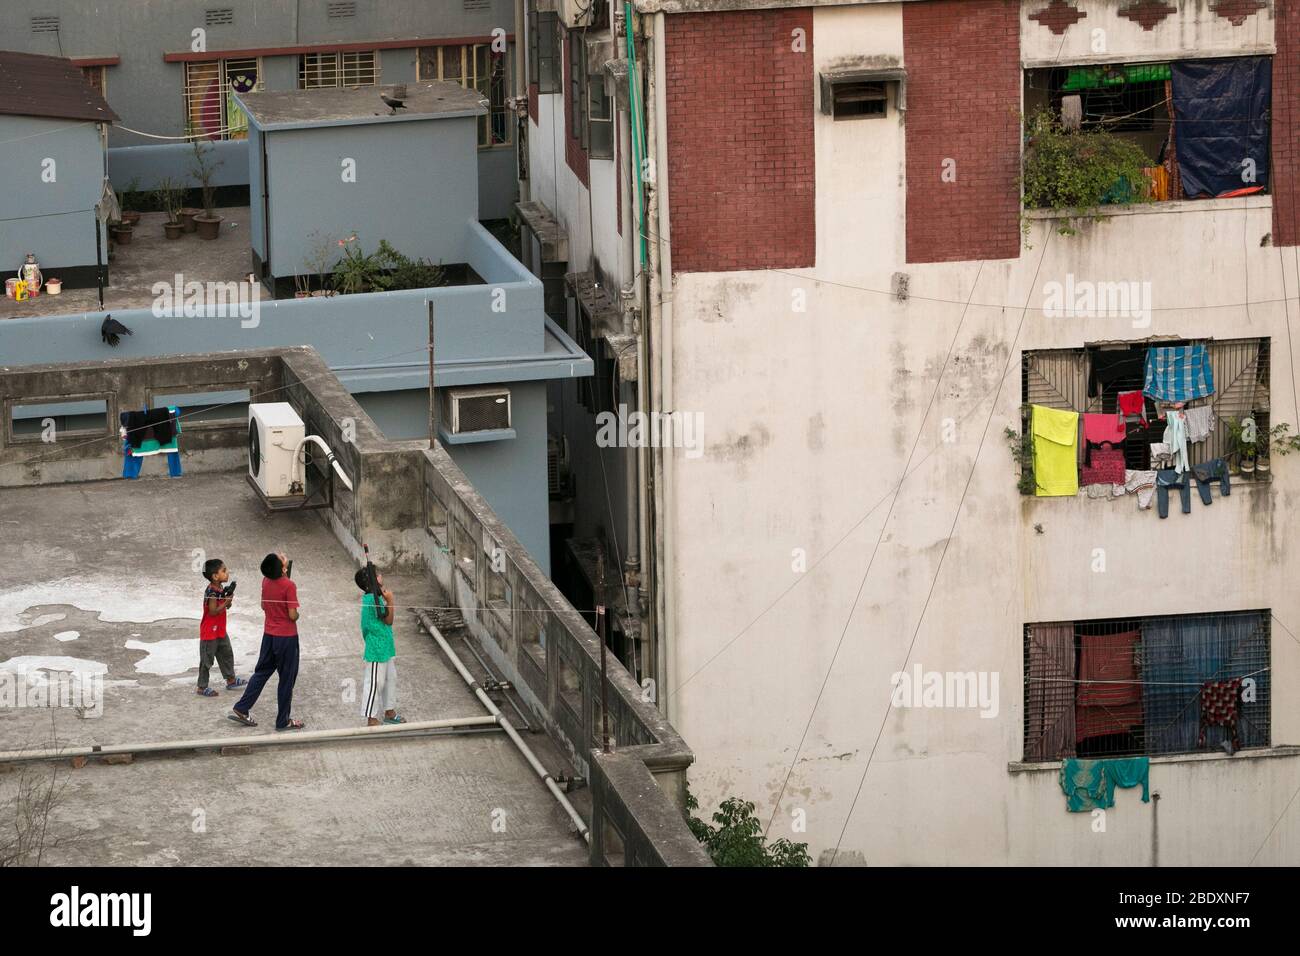 DHAKA, BANGLADESH - APRILE 10: Bambini che giocano sul tetto di un edificio durante la chiusura a chiave imposta dal governo come misura preventiva contro il COV Foto Stock